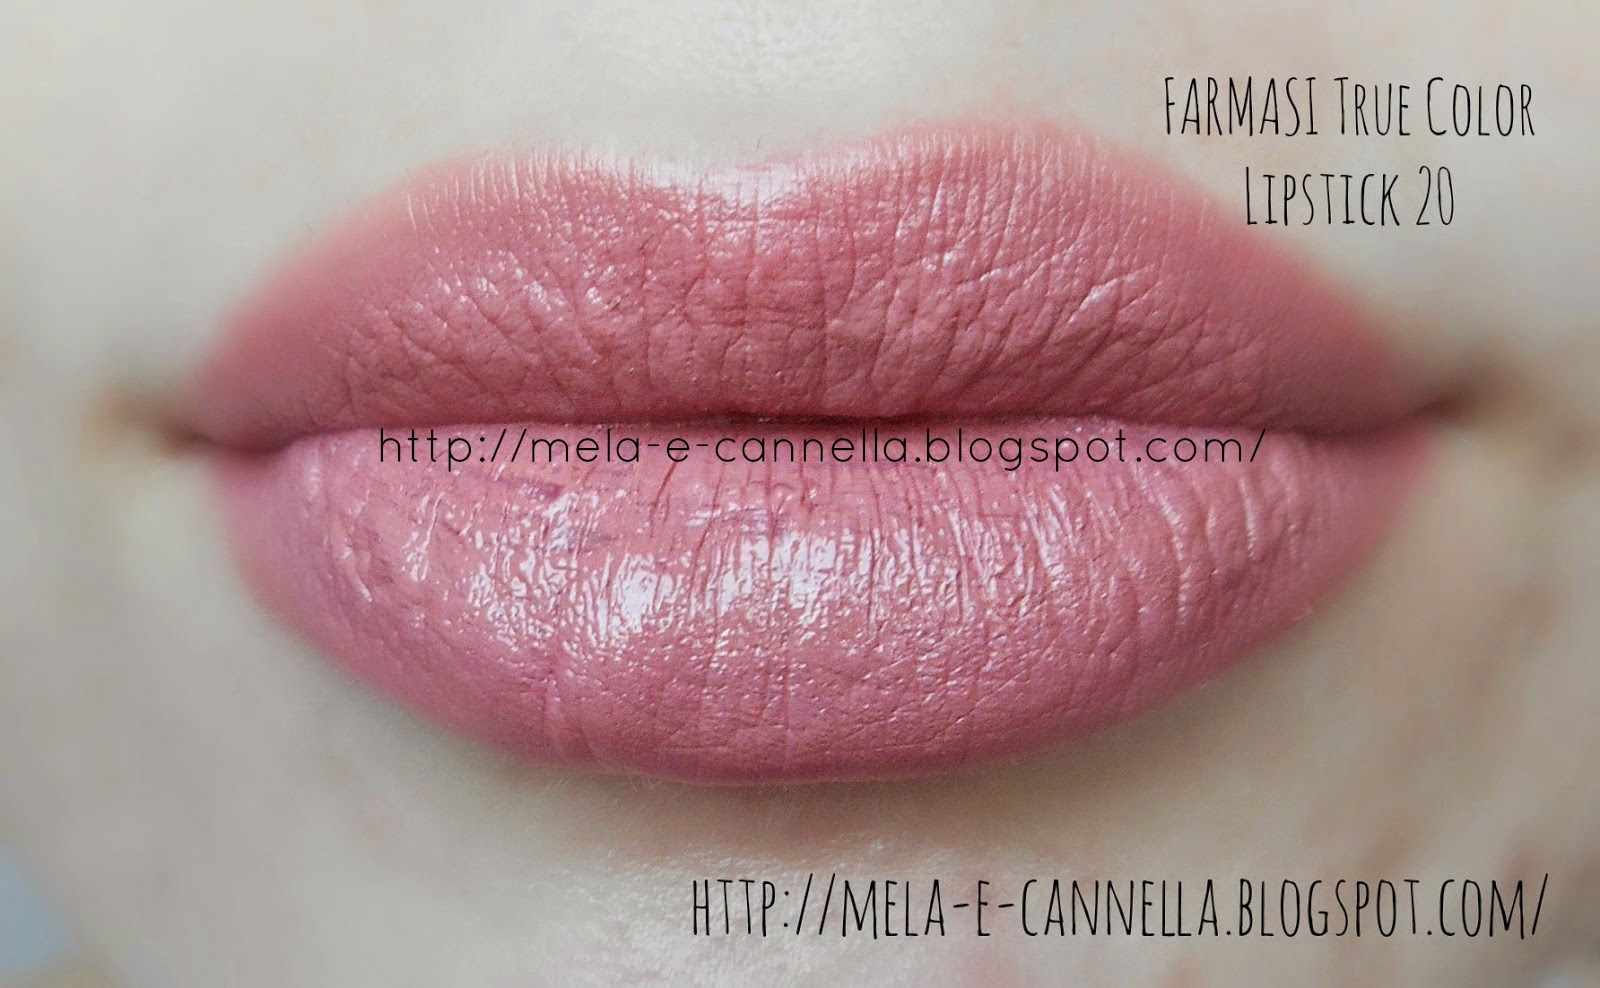 mela-e-cannella: FARMASI True Color Lipstick 5 - Nude Velvet